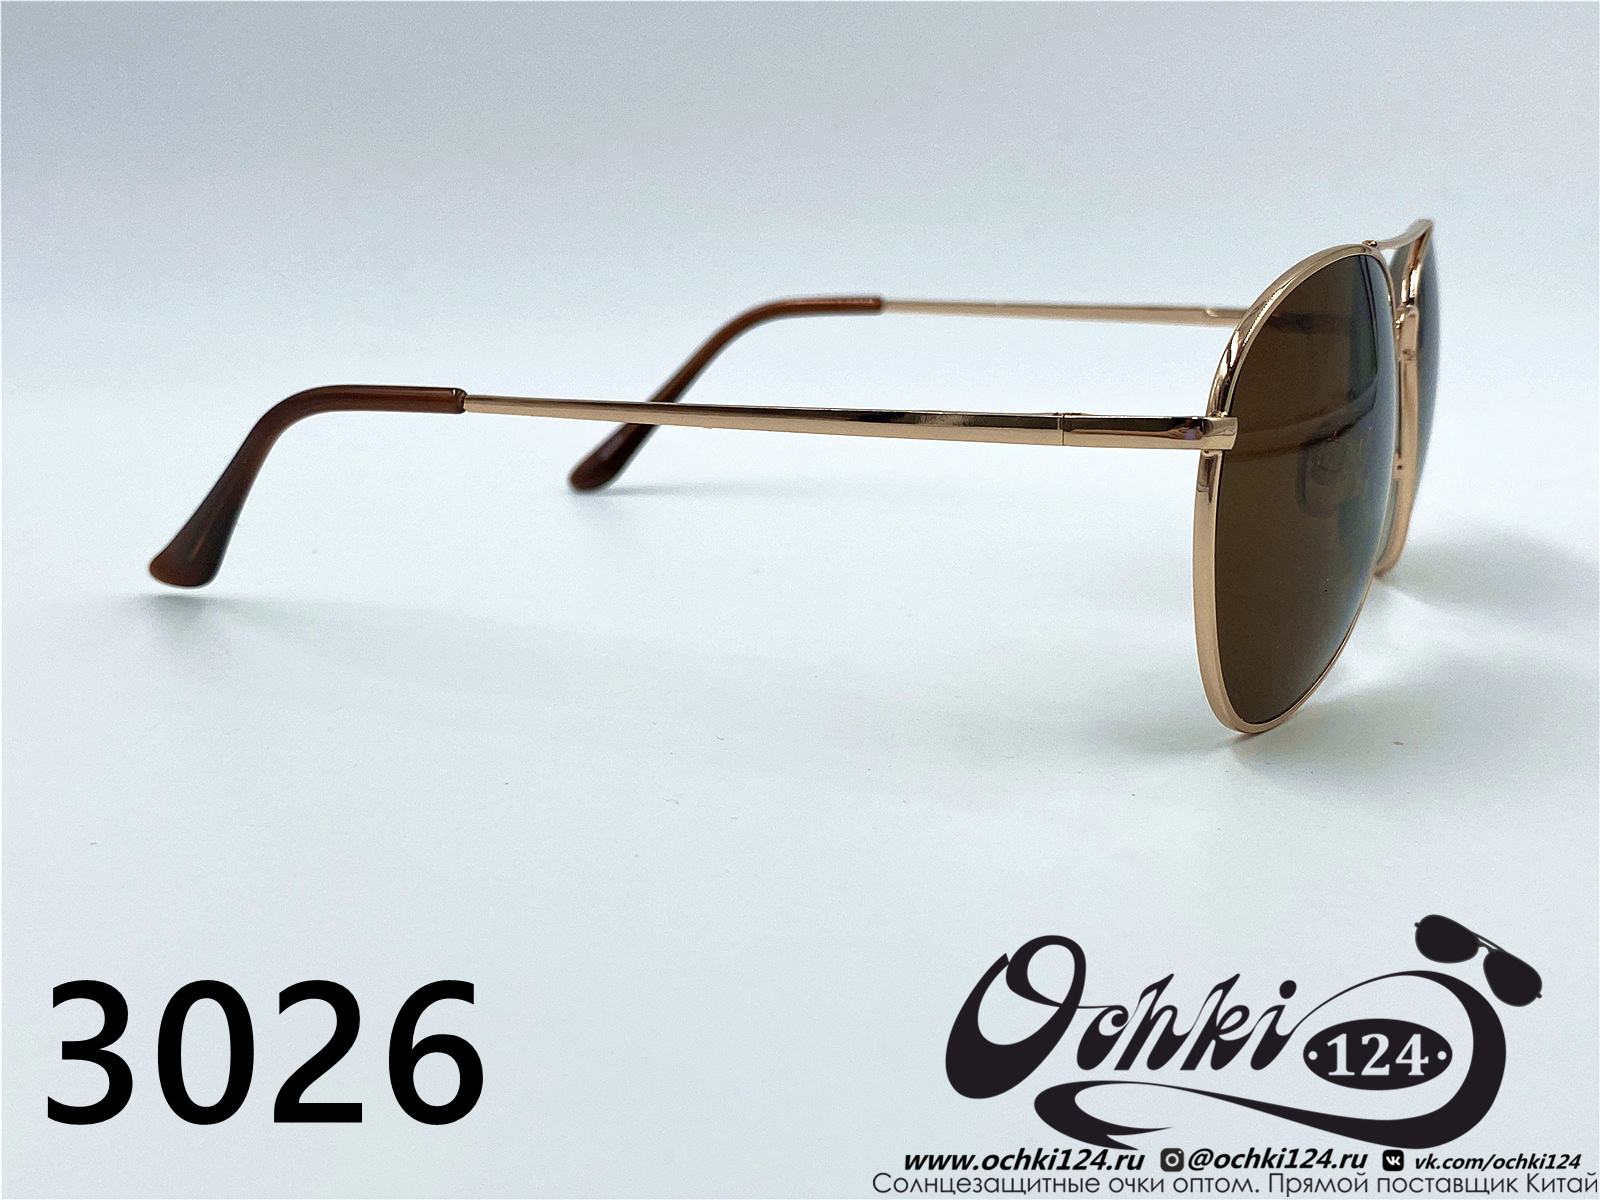  Солнцезащитные очки картинка 2022 Мужские Авиаторы KaiFeng 3026-4 